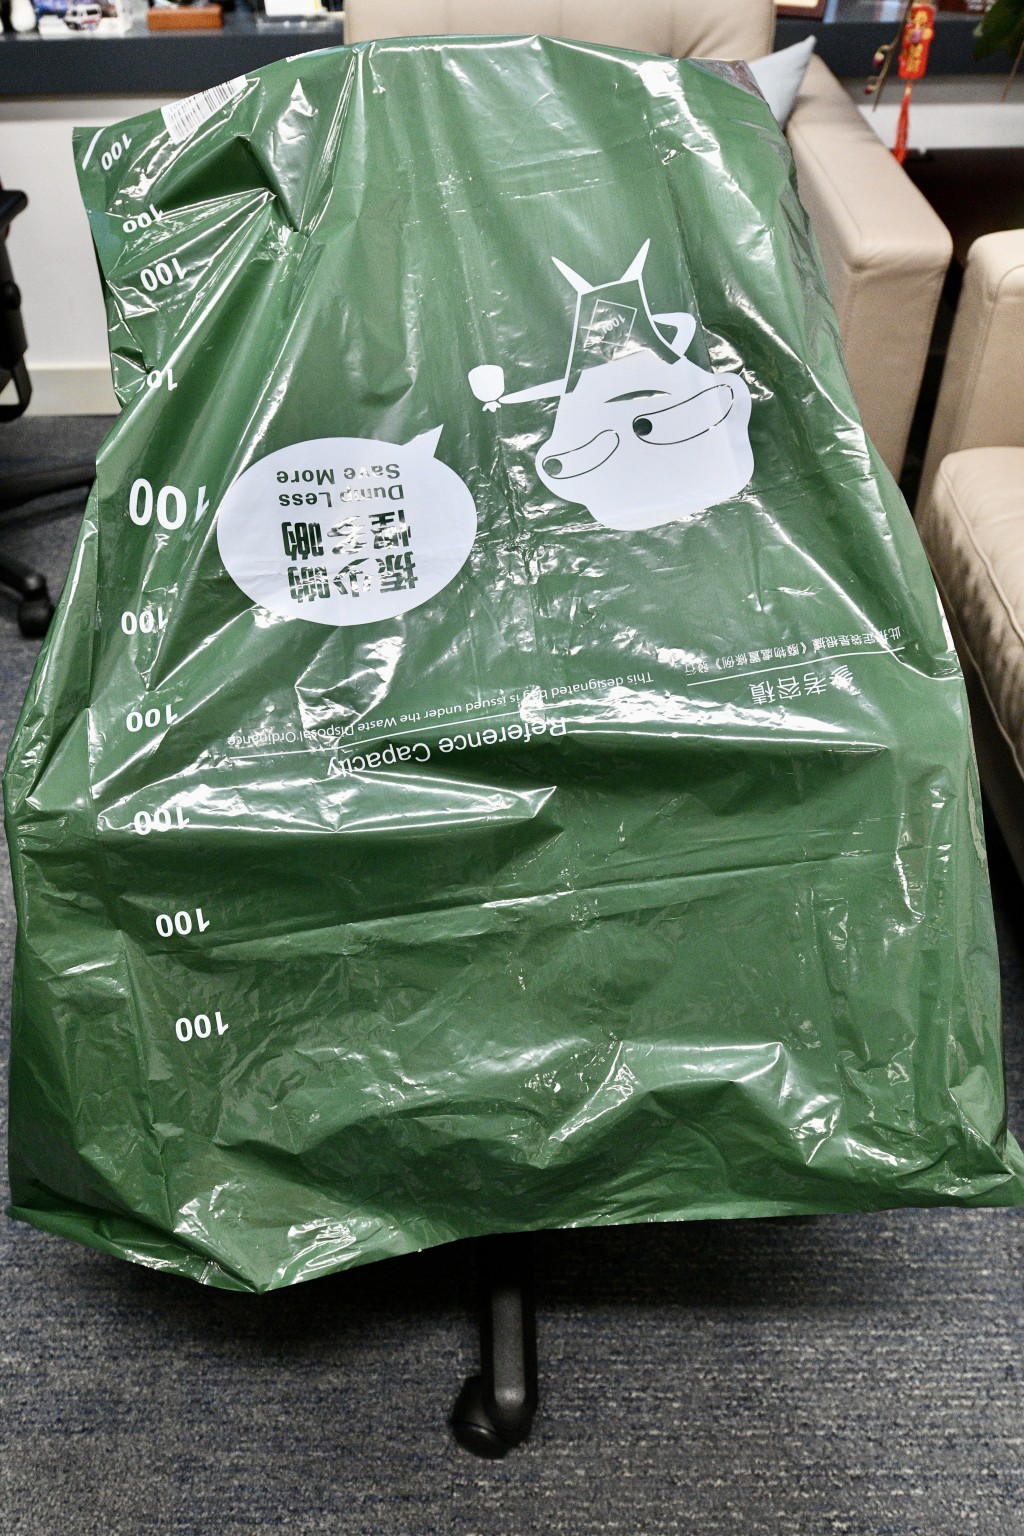 最大100公升的袋可以套入辦公室的椅子。盧江球攝